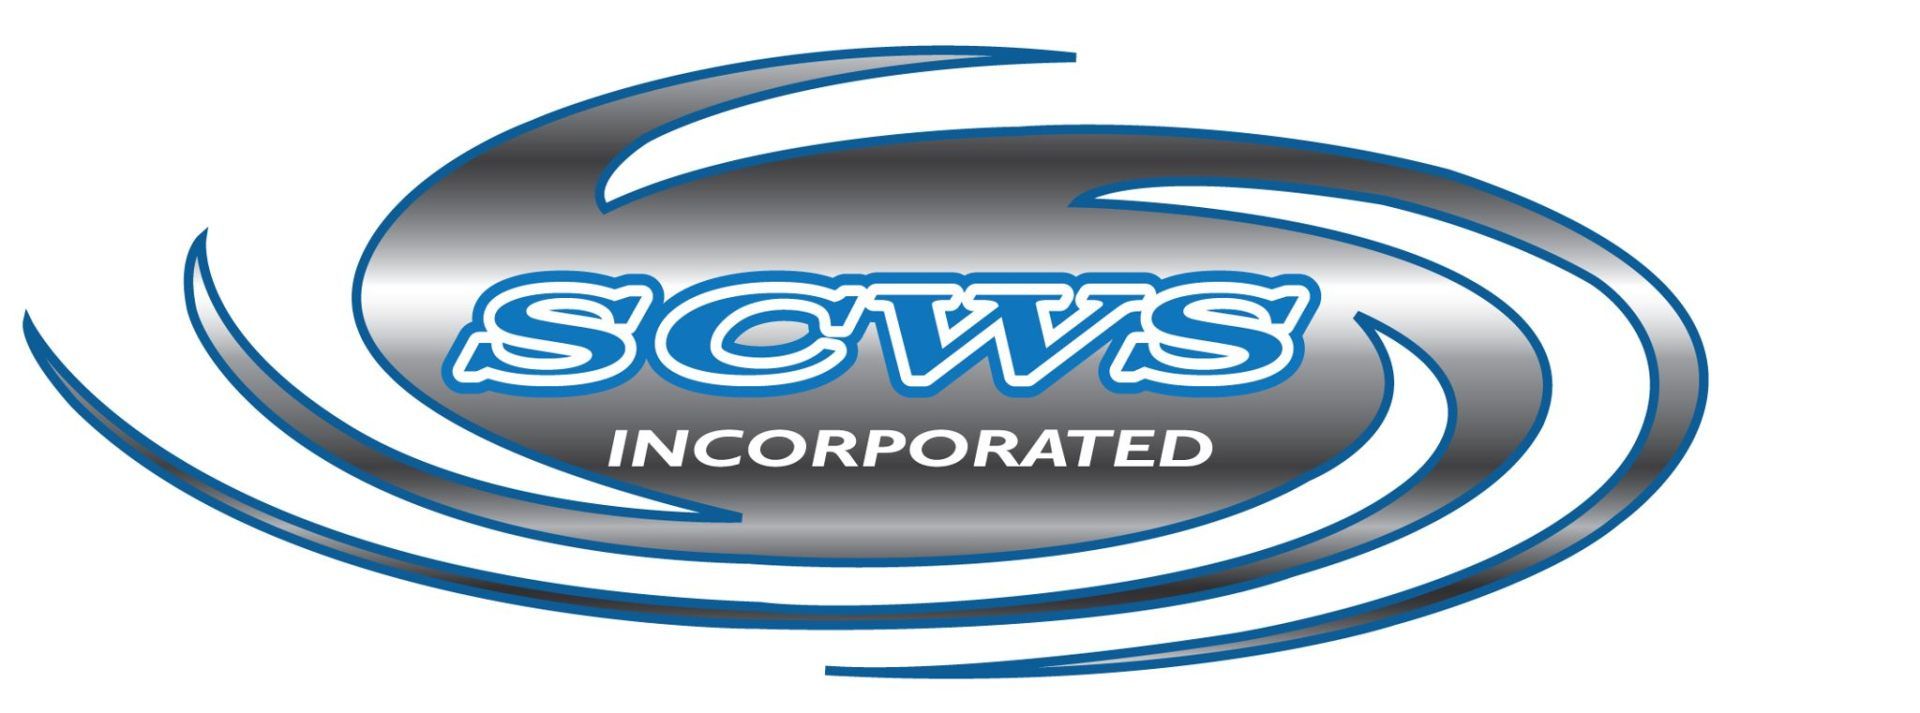 SCWS Inc. Car Wash Systems Logo